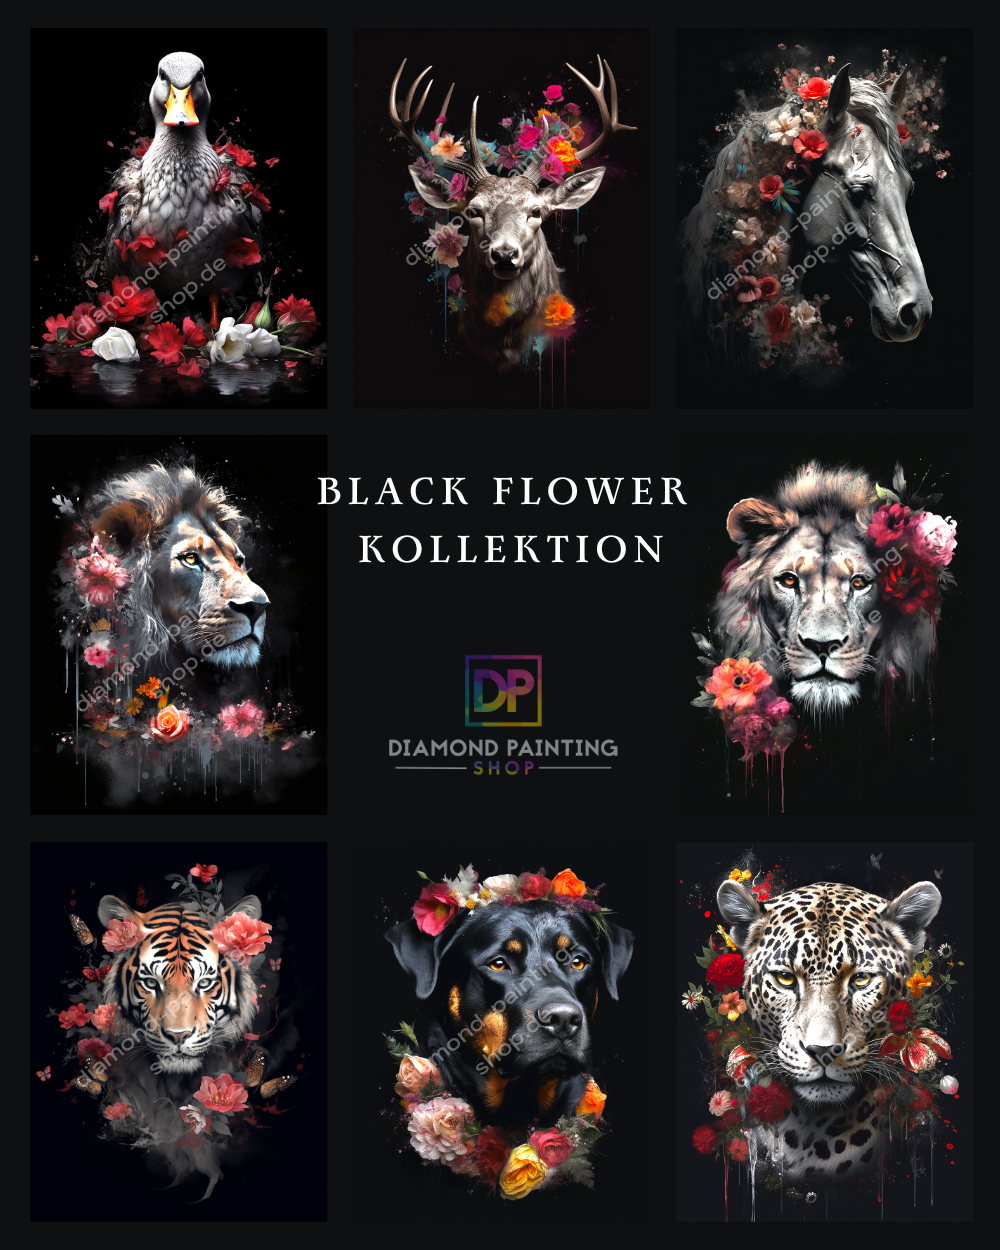 "Black Flower" Kollektion